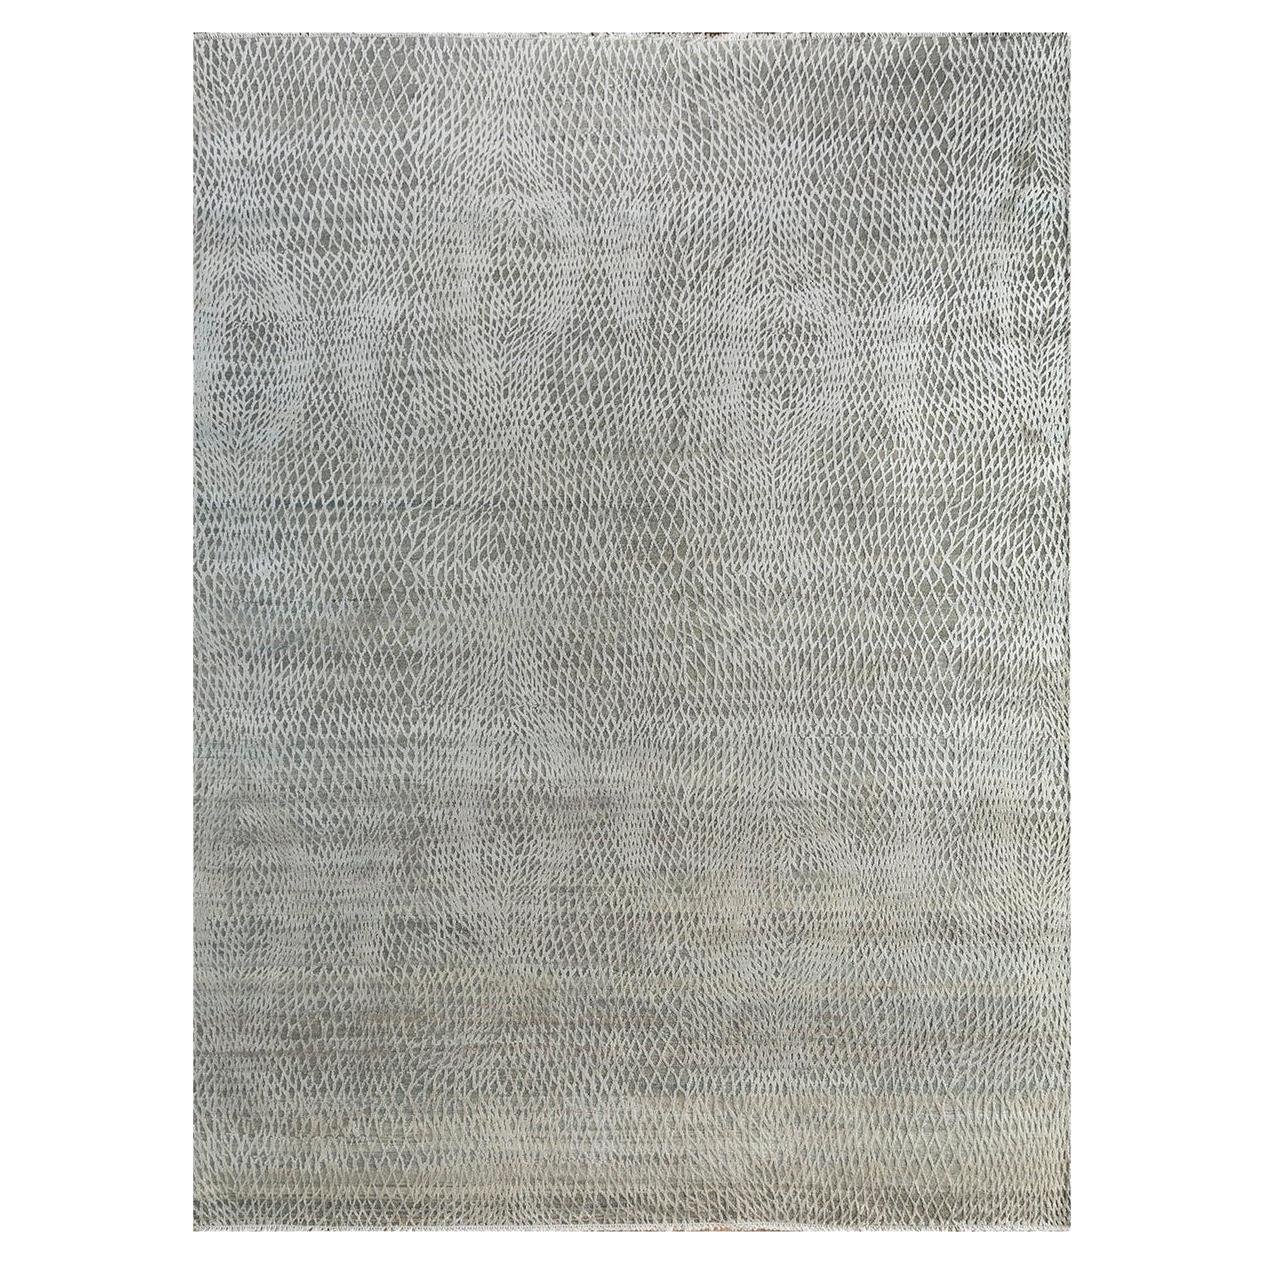  Tapis des tisserands rurals, noué, laine, 270 x 360 cm